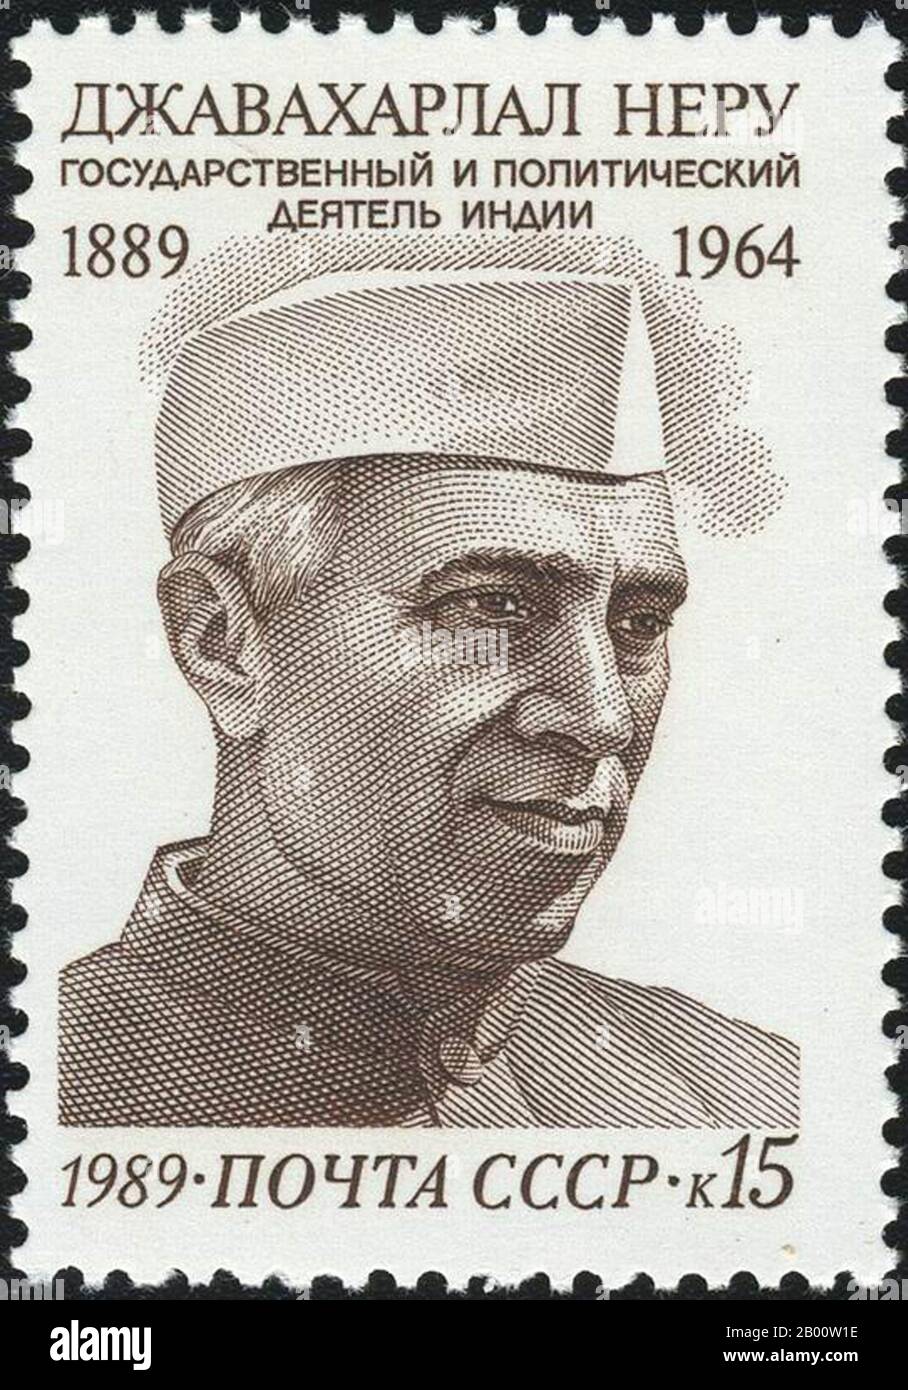 India/URSS: Sello de la URSS Jawaharlal Nehru, primer primer Ministro de la India (1947-1964). Jawaharlal Nehru (14 de noviembre de 1889 – 27 de mayo de 1964) fue un estadista indio que fue el primer (y hasta la fecha más antiguo) ministro de la India, desde 1947 hasta 1964. Nehru, una de las figuras principales del movimiento de independencia de la India, fue elegido por el Partido del Congreso para asumir el cargo de primer primer Ministro independiente de la India, y reelegido cuando el Partido del Congreso ganó las primeras elecciones generales de la India en 1952. También fue uno de los fundadores del Movimiento no Alineado. Foto de stock